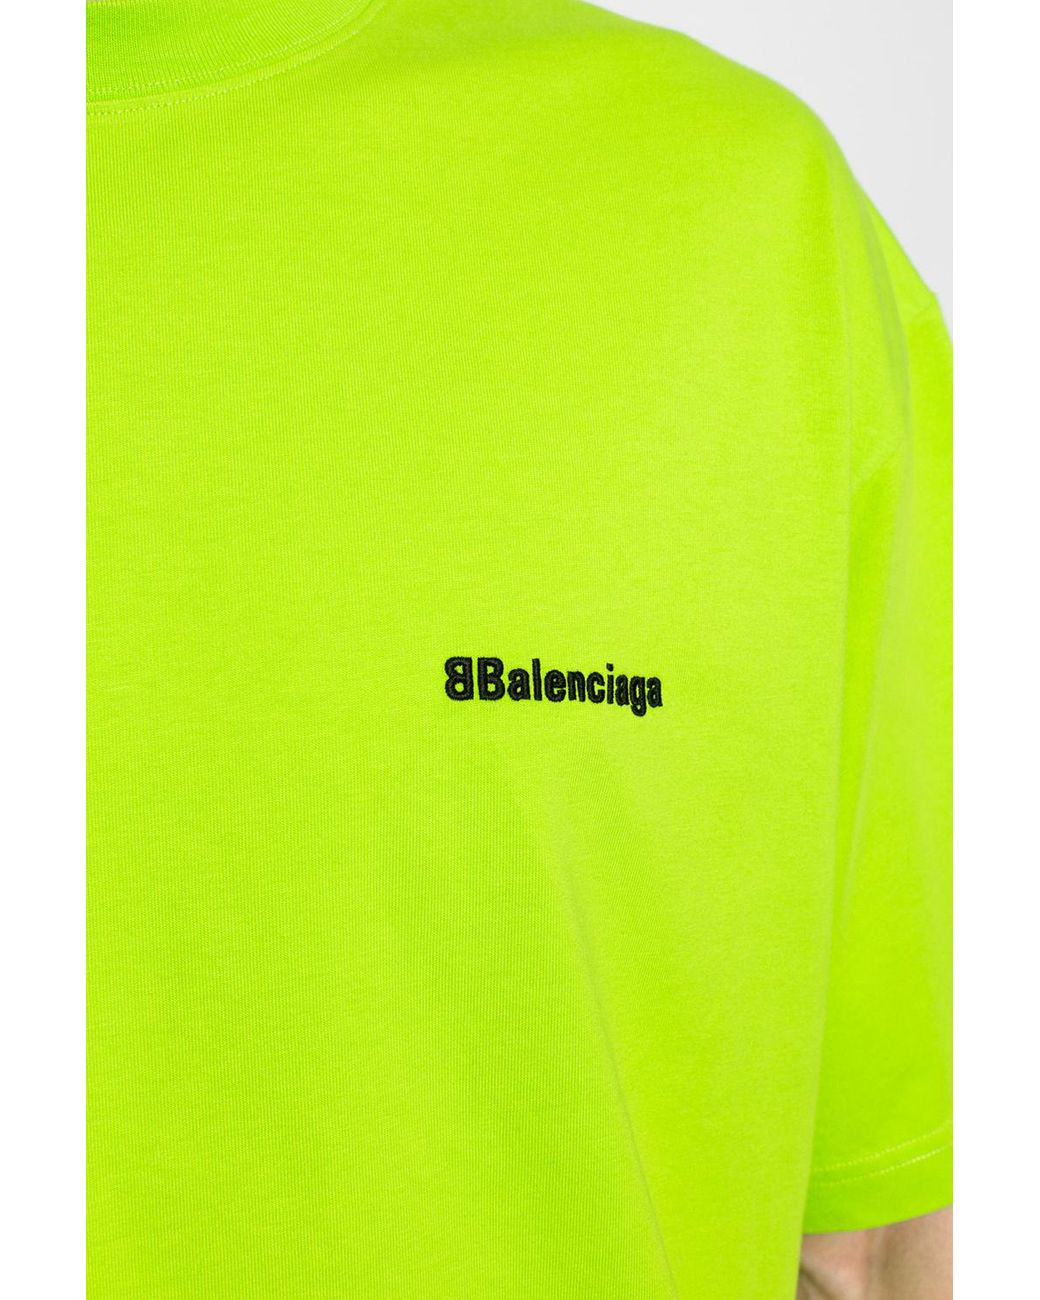 Balenciaga ,Campaign Logo Tee in Neon BNWT 39 Neck